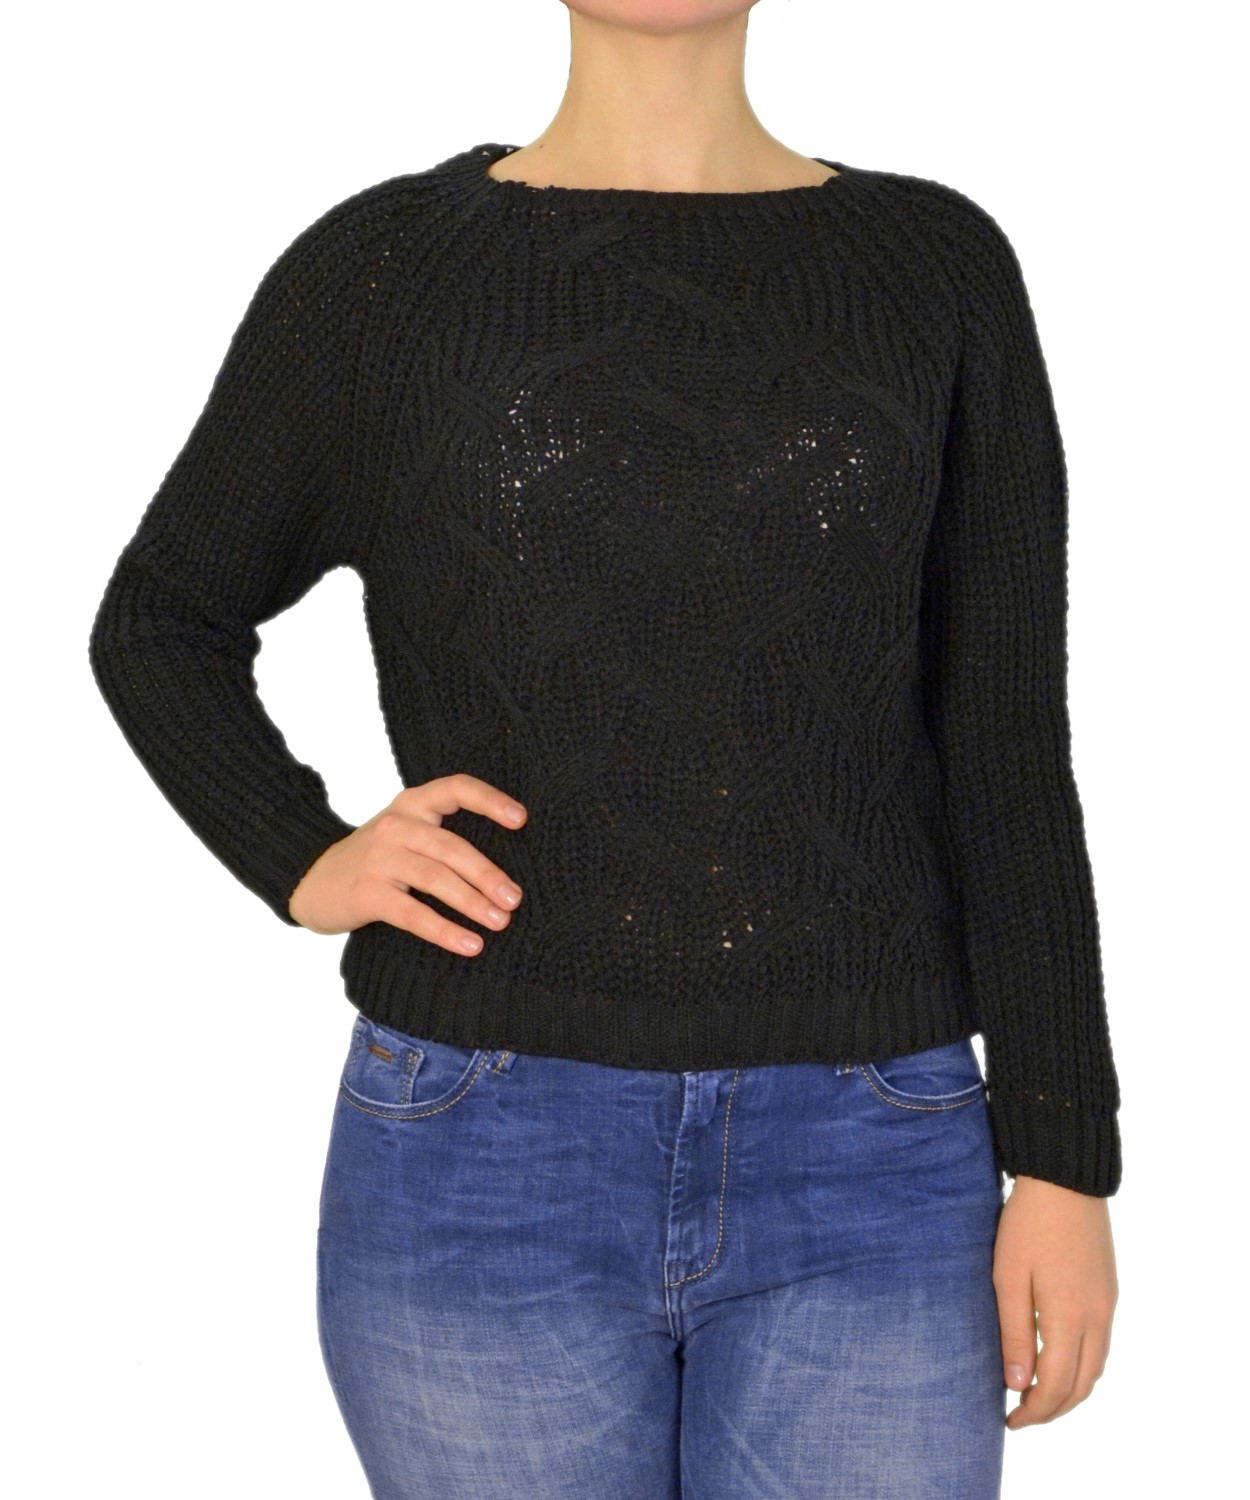 Γυναικεία μακρυμάνικη πλεκτή κοντή μπλούζα μαύρη 289345F